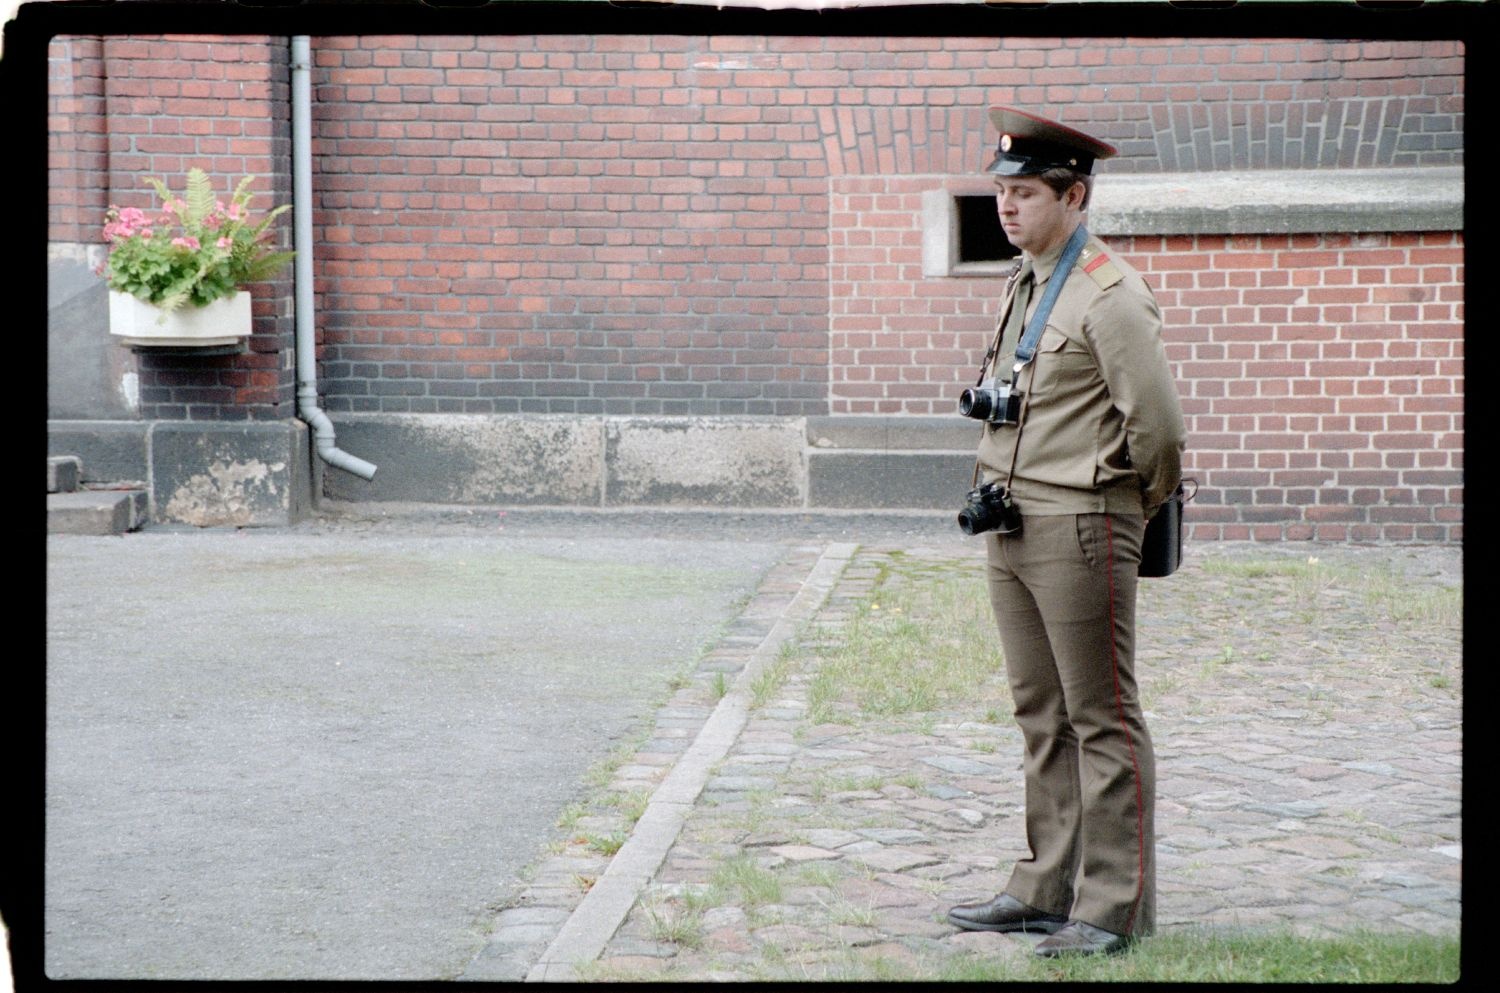 Fotografie: Wachablösung vor dem Alliierten Kriegsverbrechergefängnis Berlin-Spandau (AlliiertenMuseum/U.S. Army Photograph Public Domain Mark)